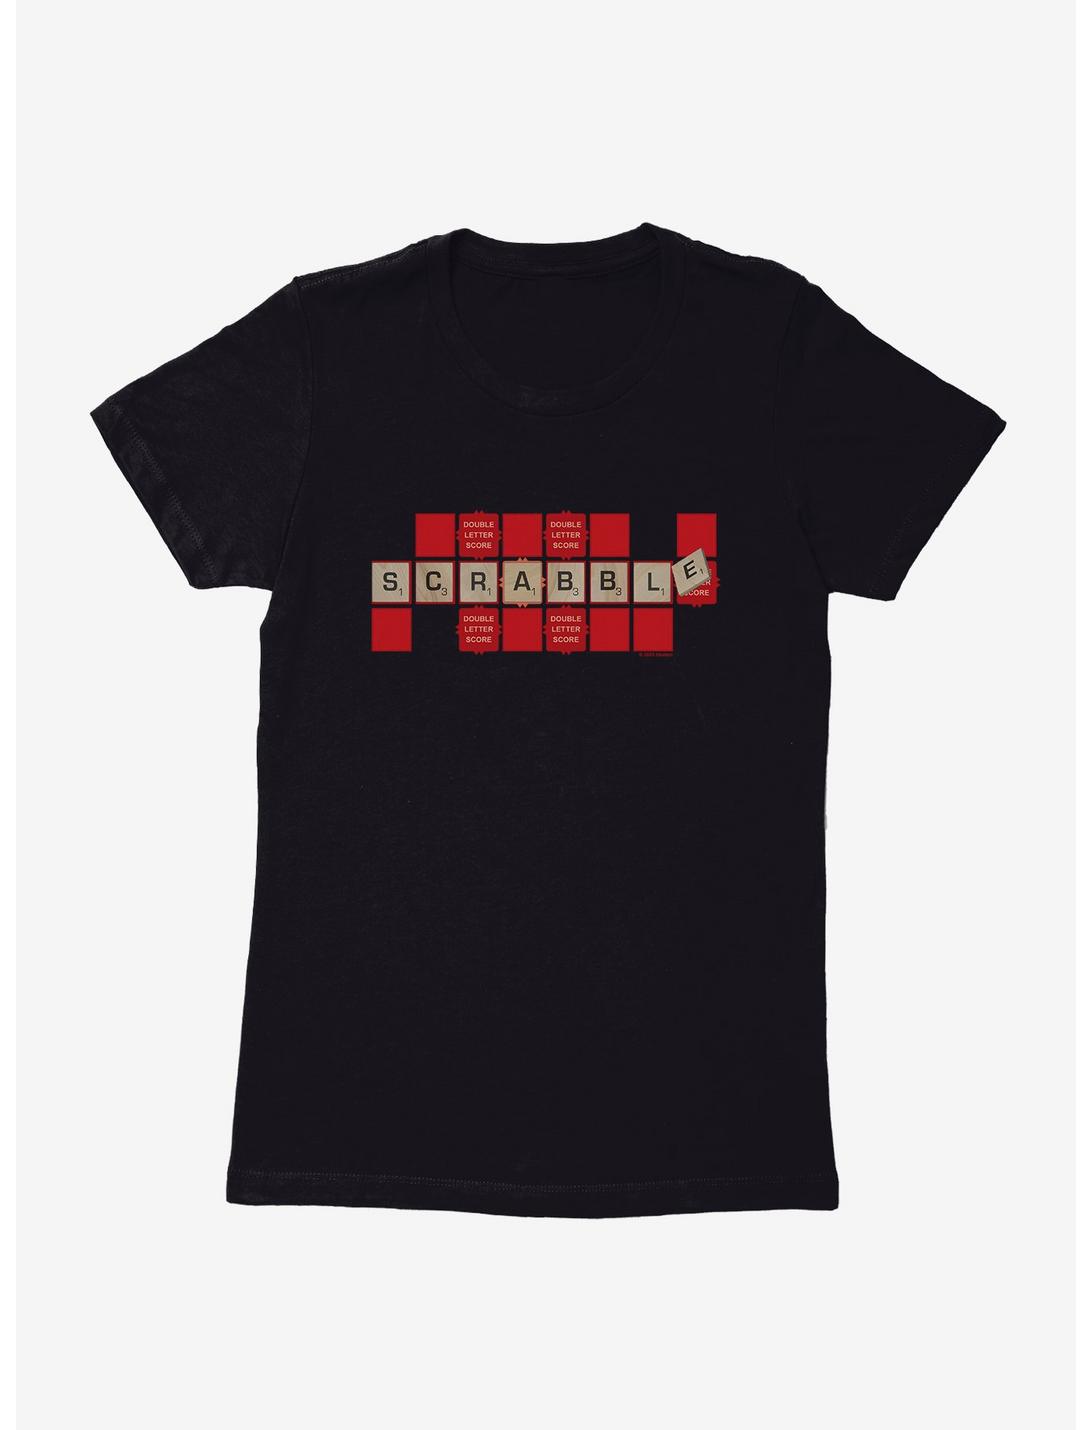 Scrabble Double Letter Score Womens T-Shirt, , hi-res